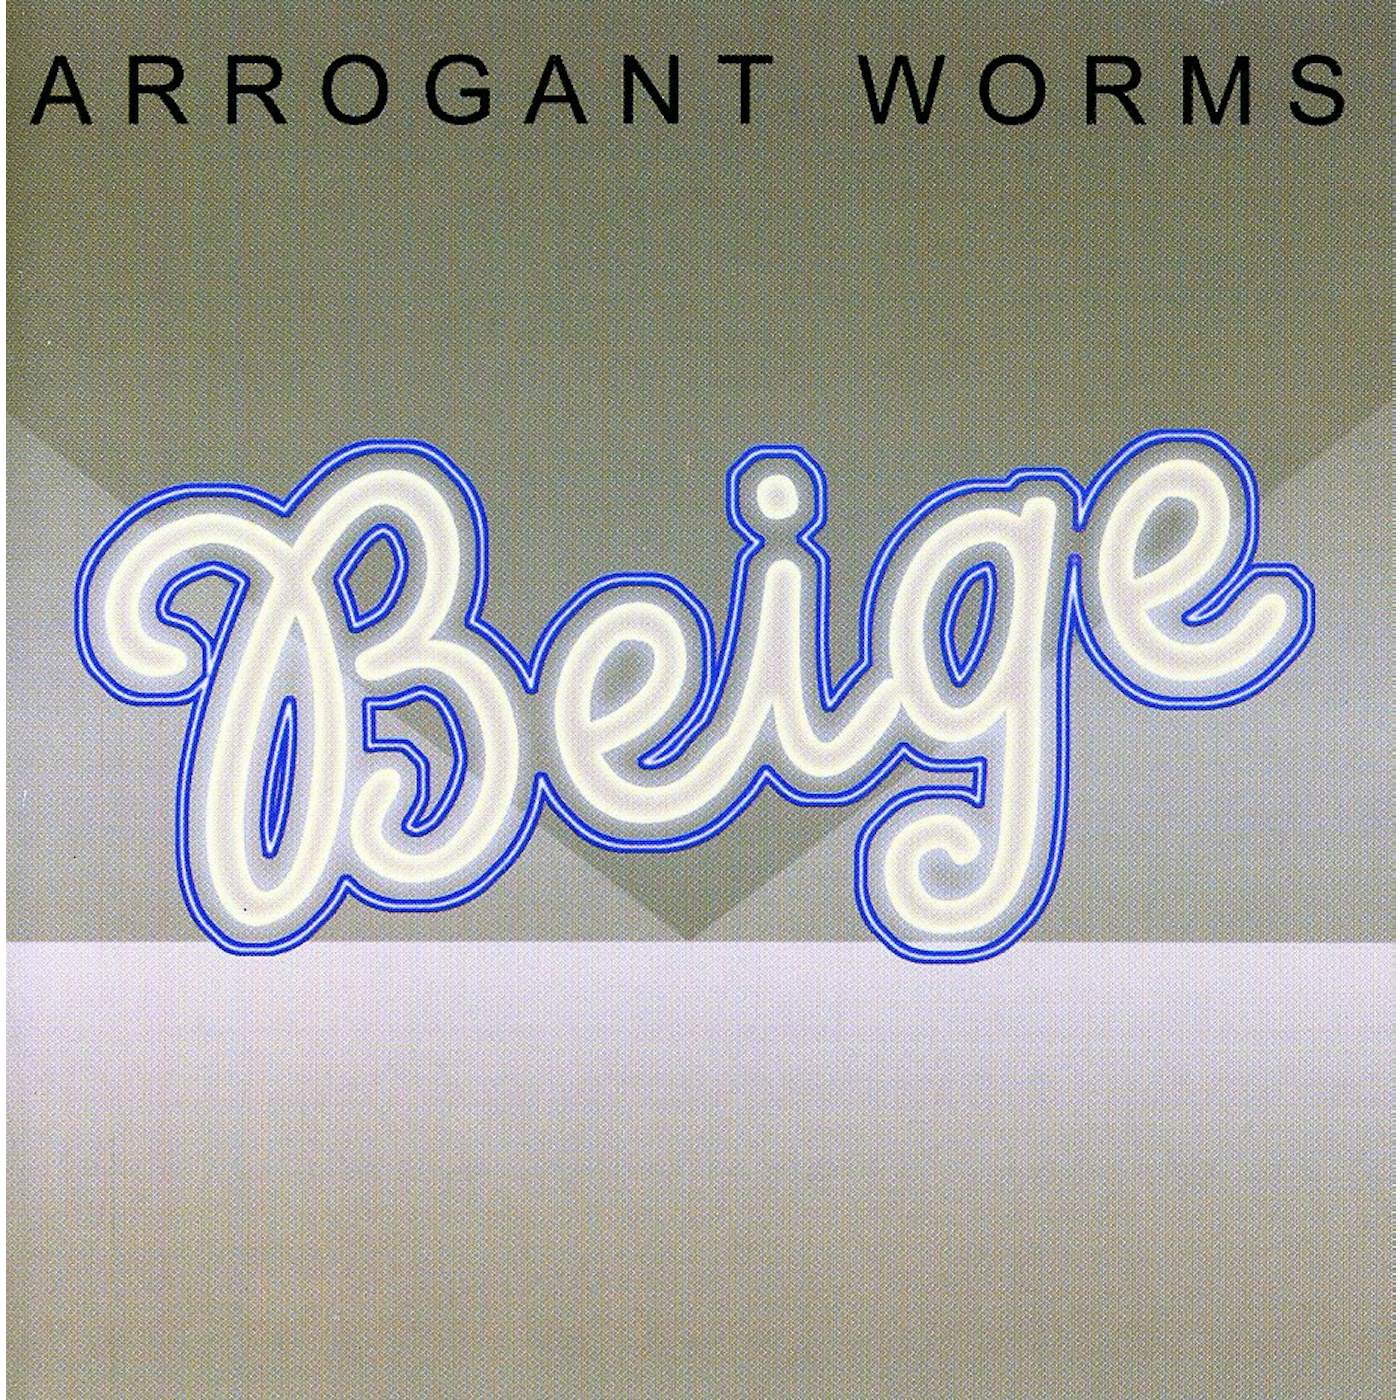 Arrogant Worms BEIGE CD